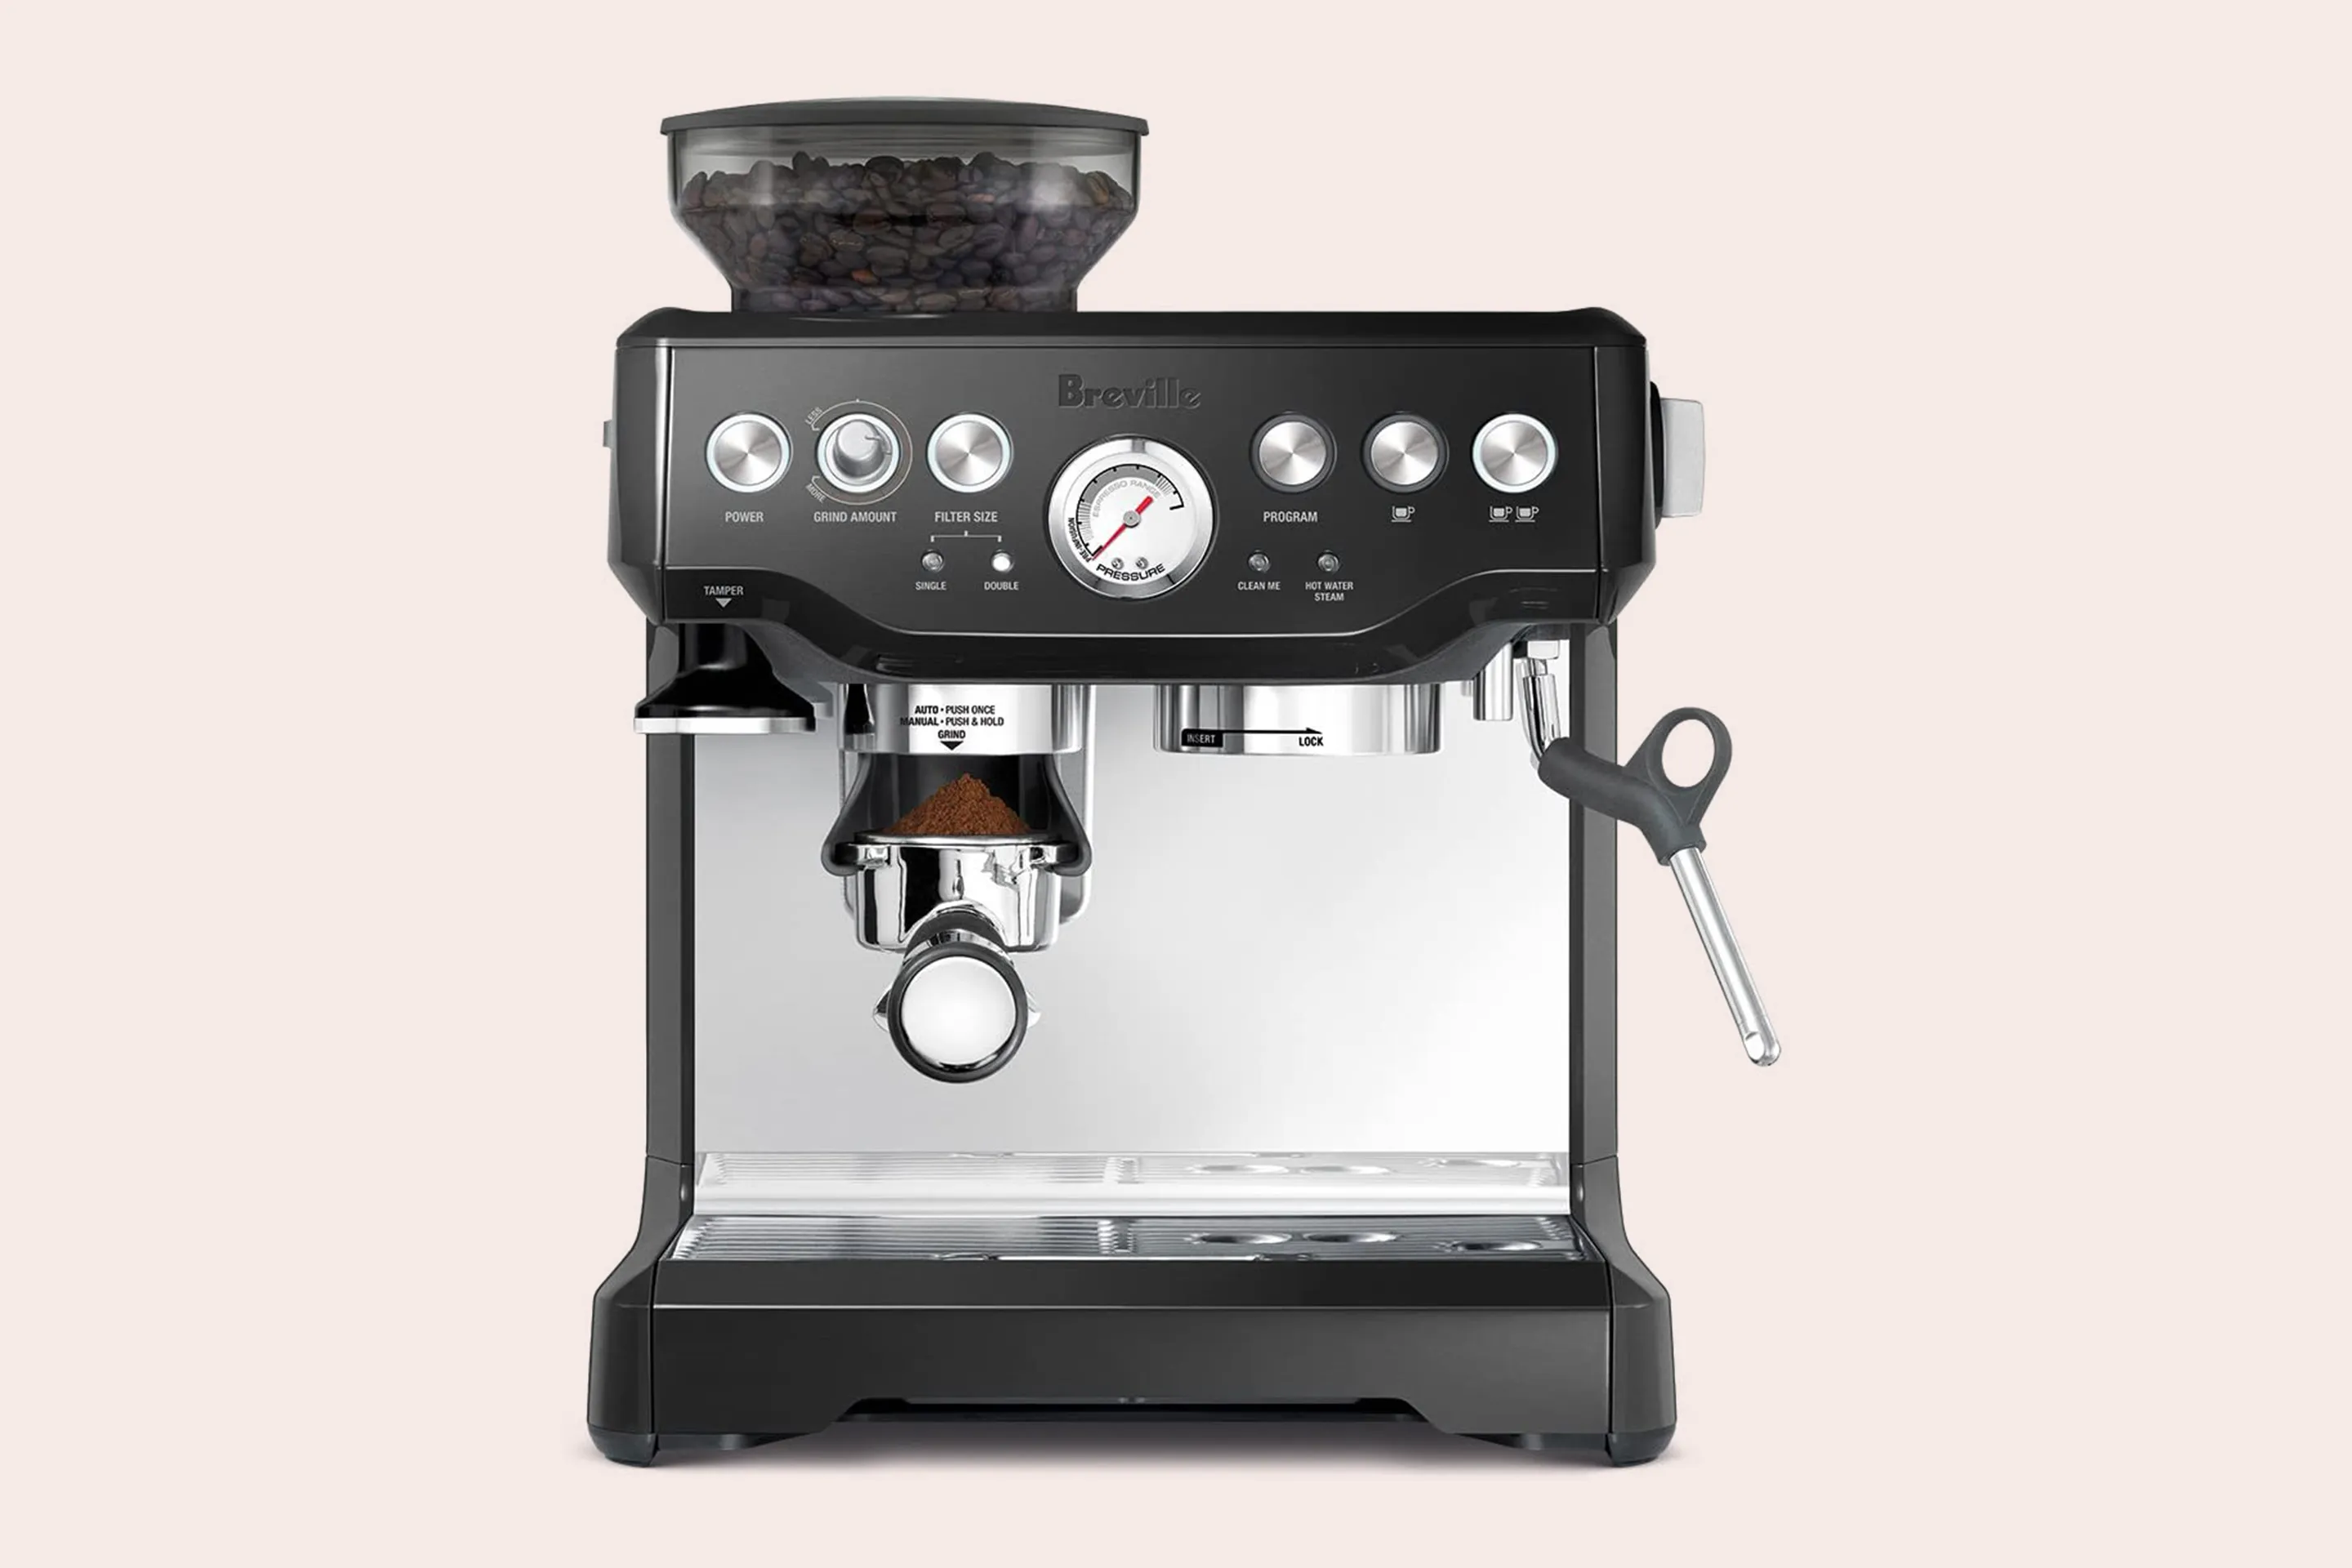 https://img.money.com/2021/05/Shopping-Breville-BES870BSXL-The-Barista-Express-Coffee-Machine.jpg